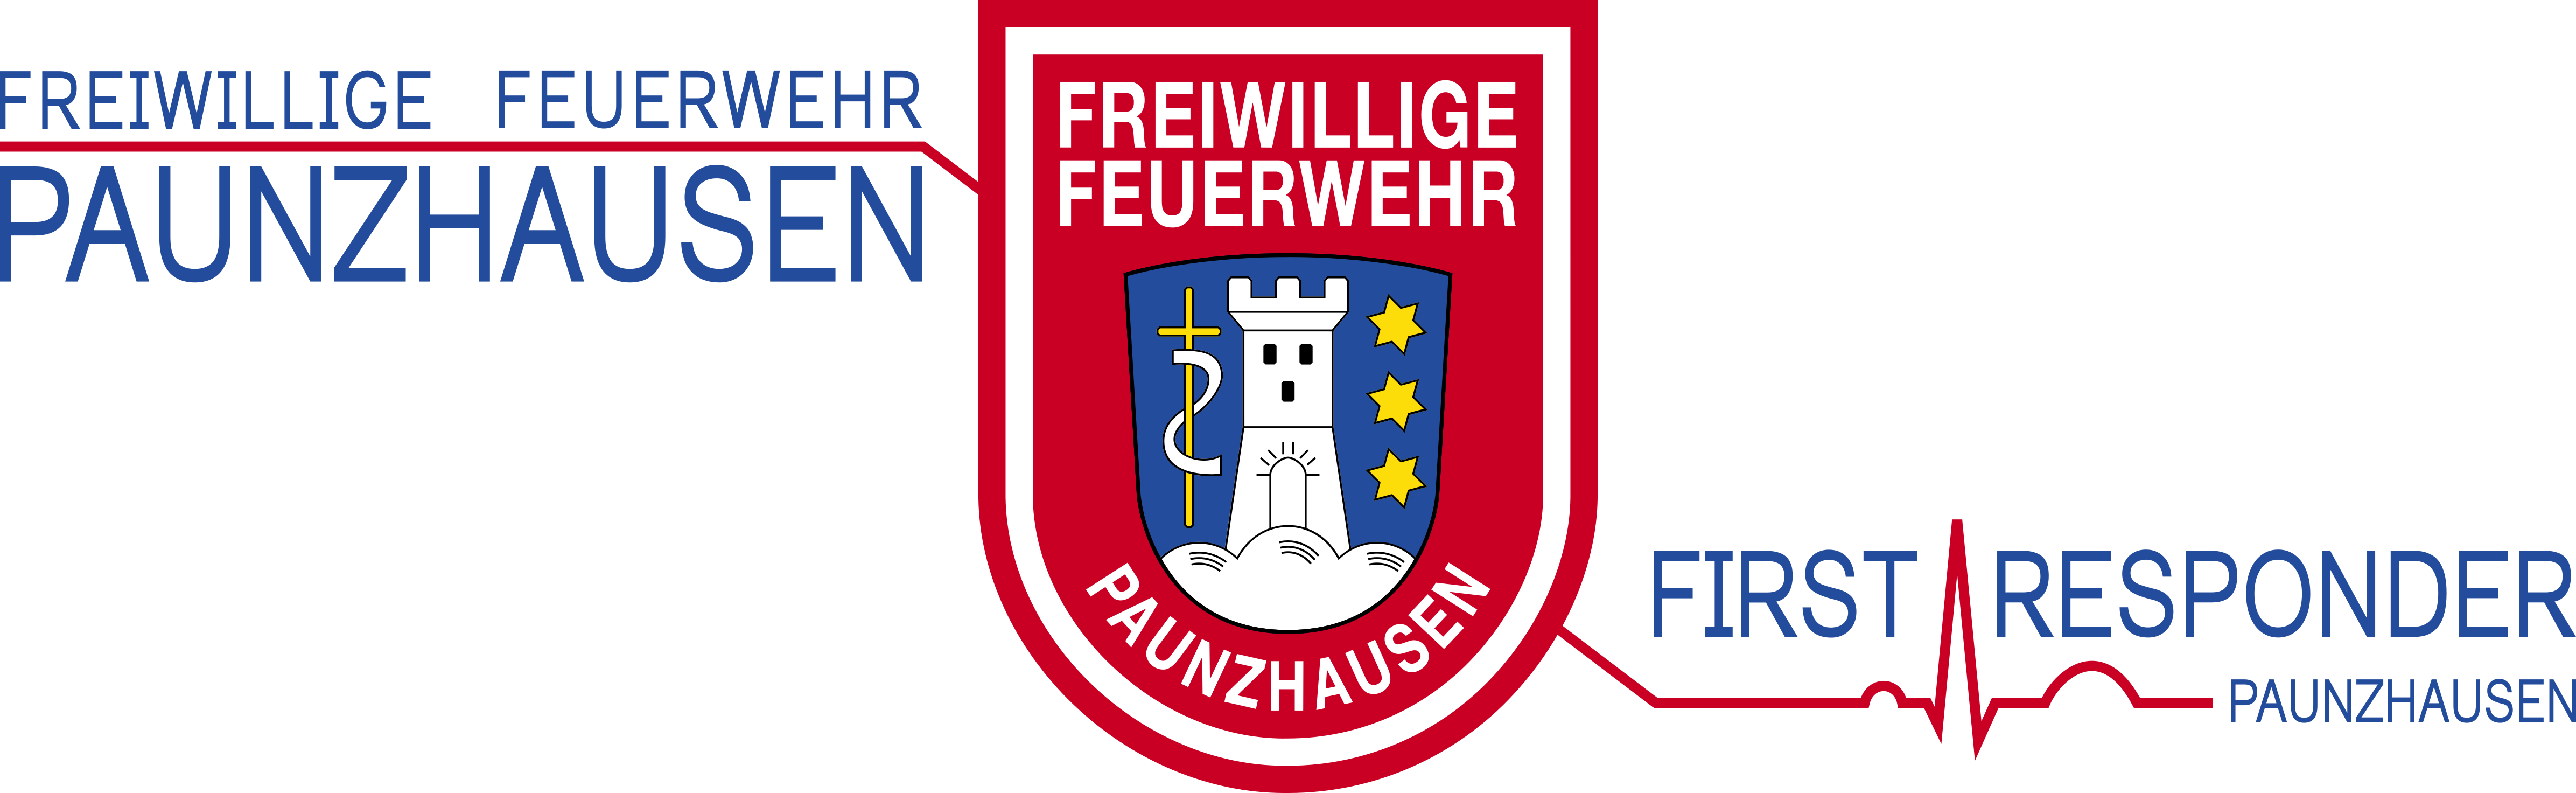 Feuerwehr Paunzhausen